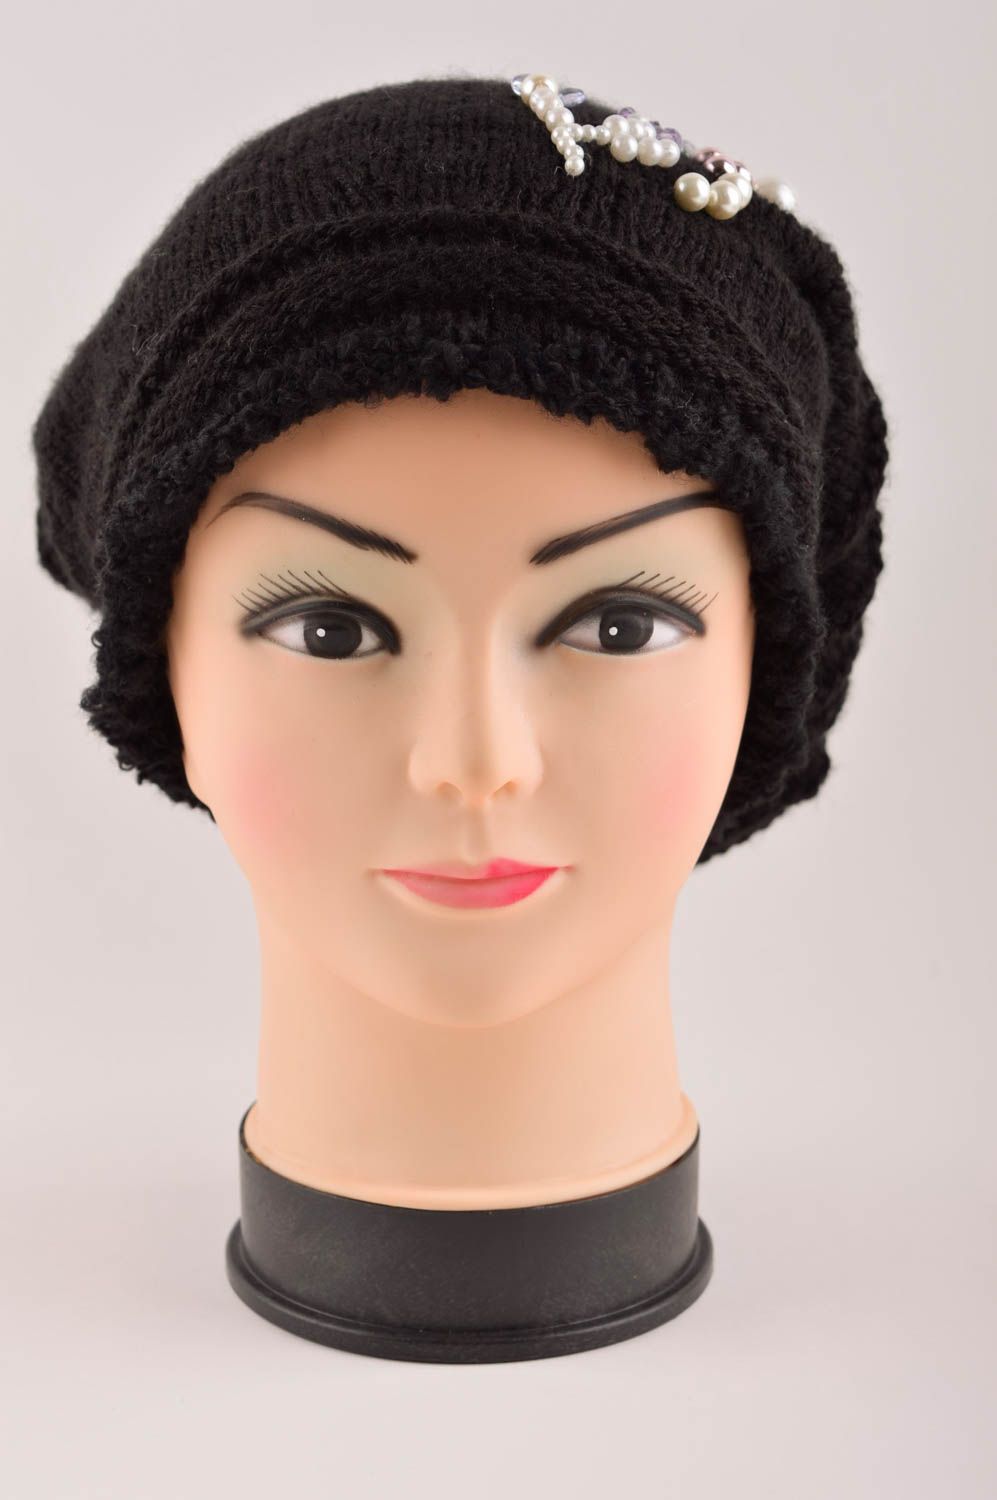 Handmade winter hat designer hat for girl unusual hat crocheted hats for girl photo 4